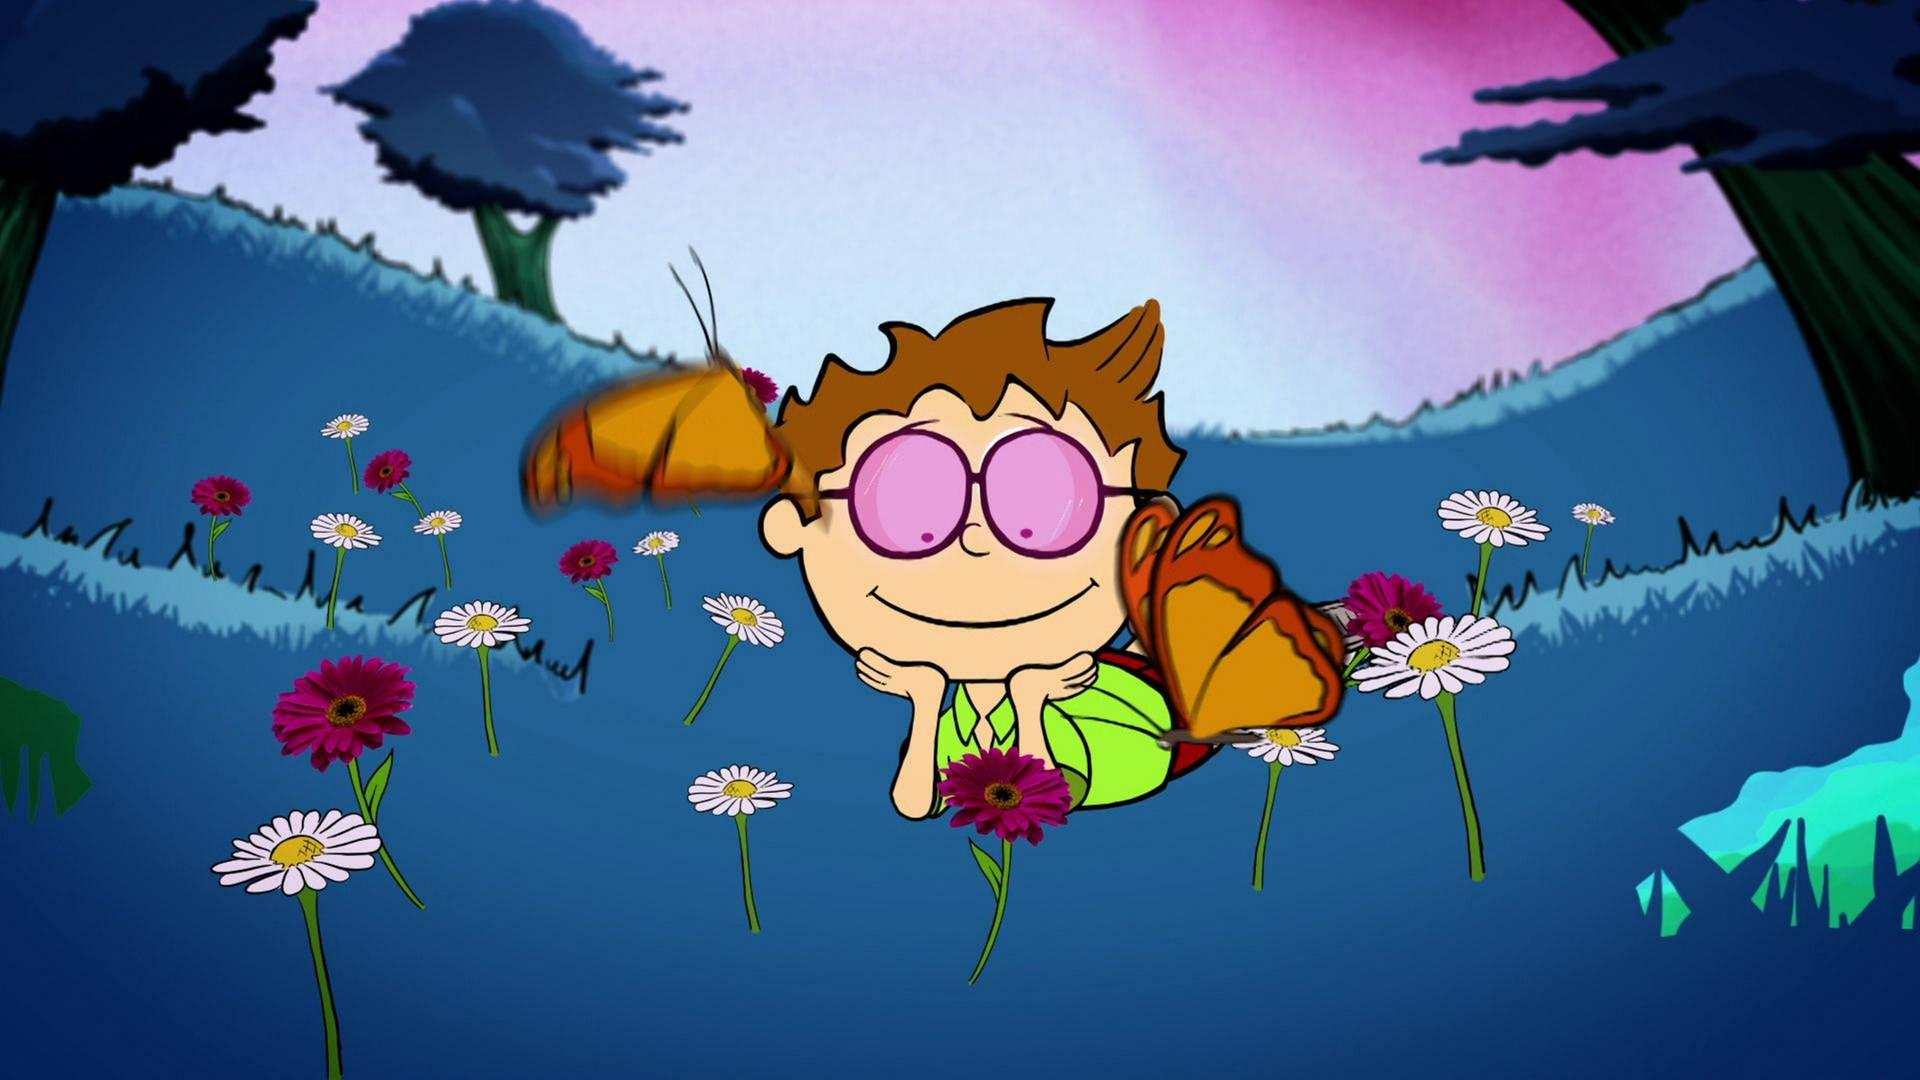 Der kleine Philosoph Knietzsche trägt eine rosa Brille und liegt auf einer blauen Wiese mit bunten Blumen und Schmetterlingen.